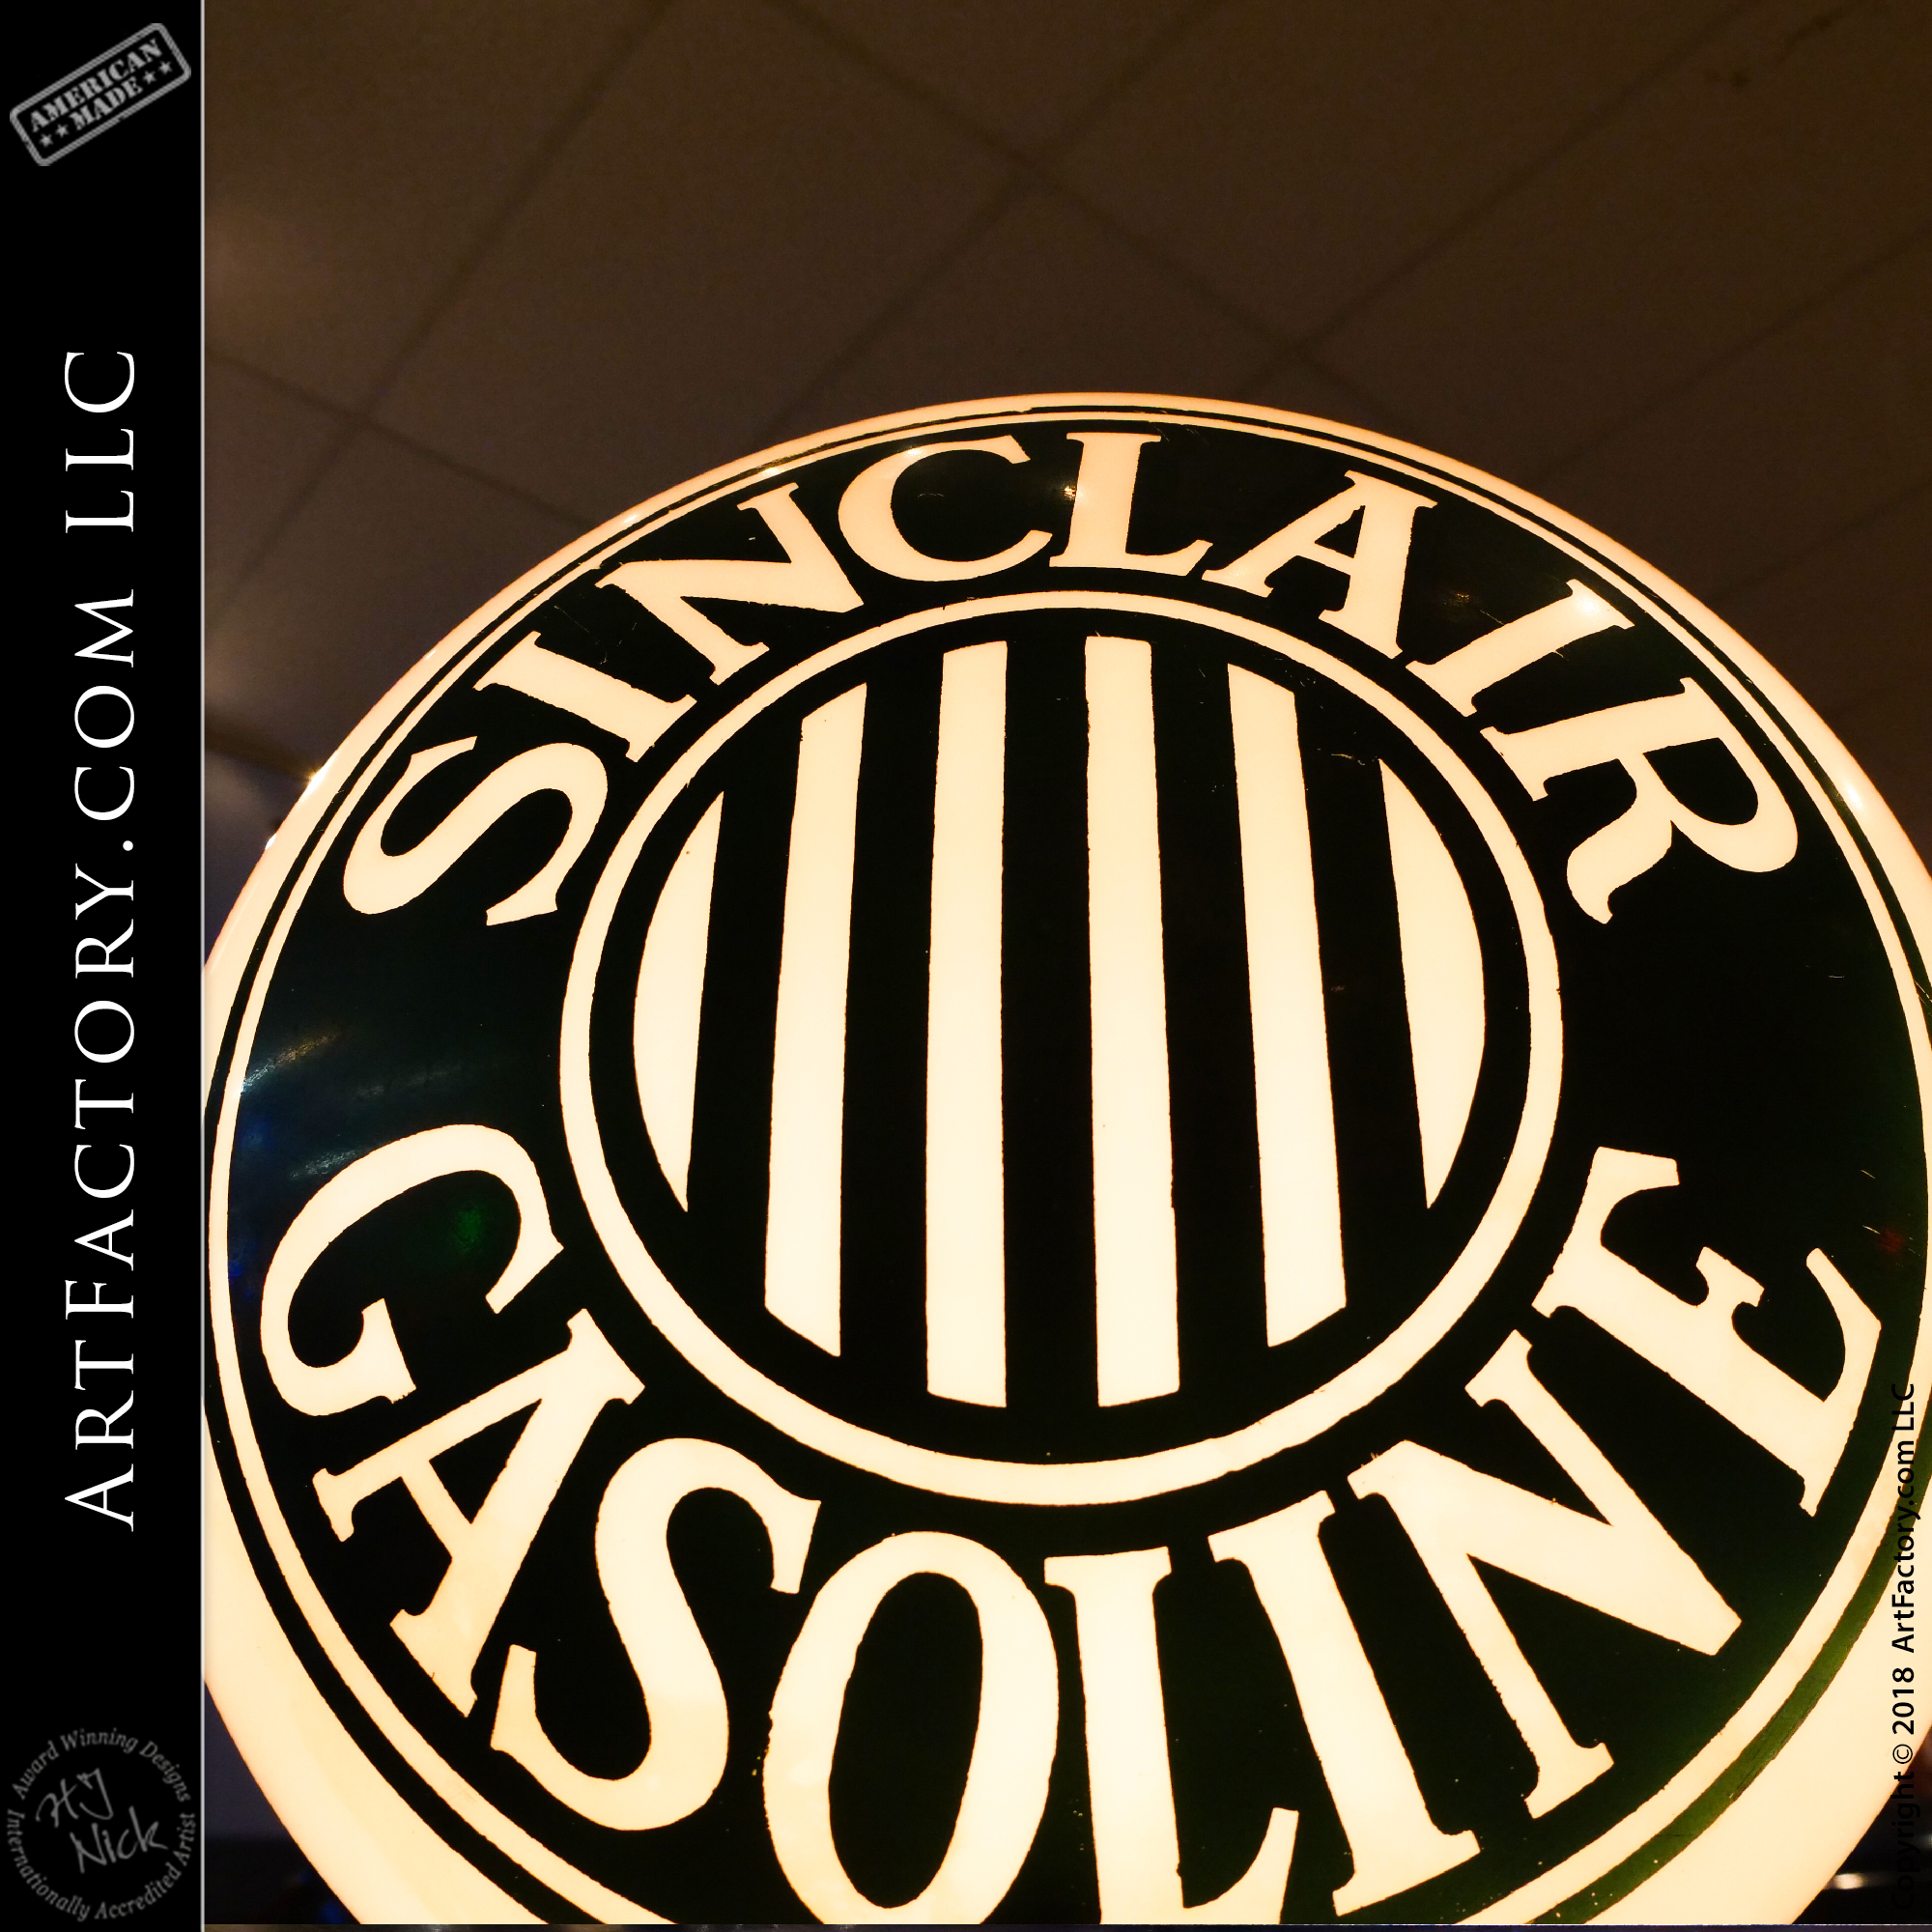 Original Sinclair Gasoline Globe